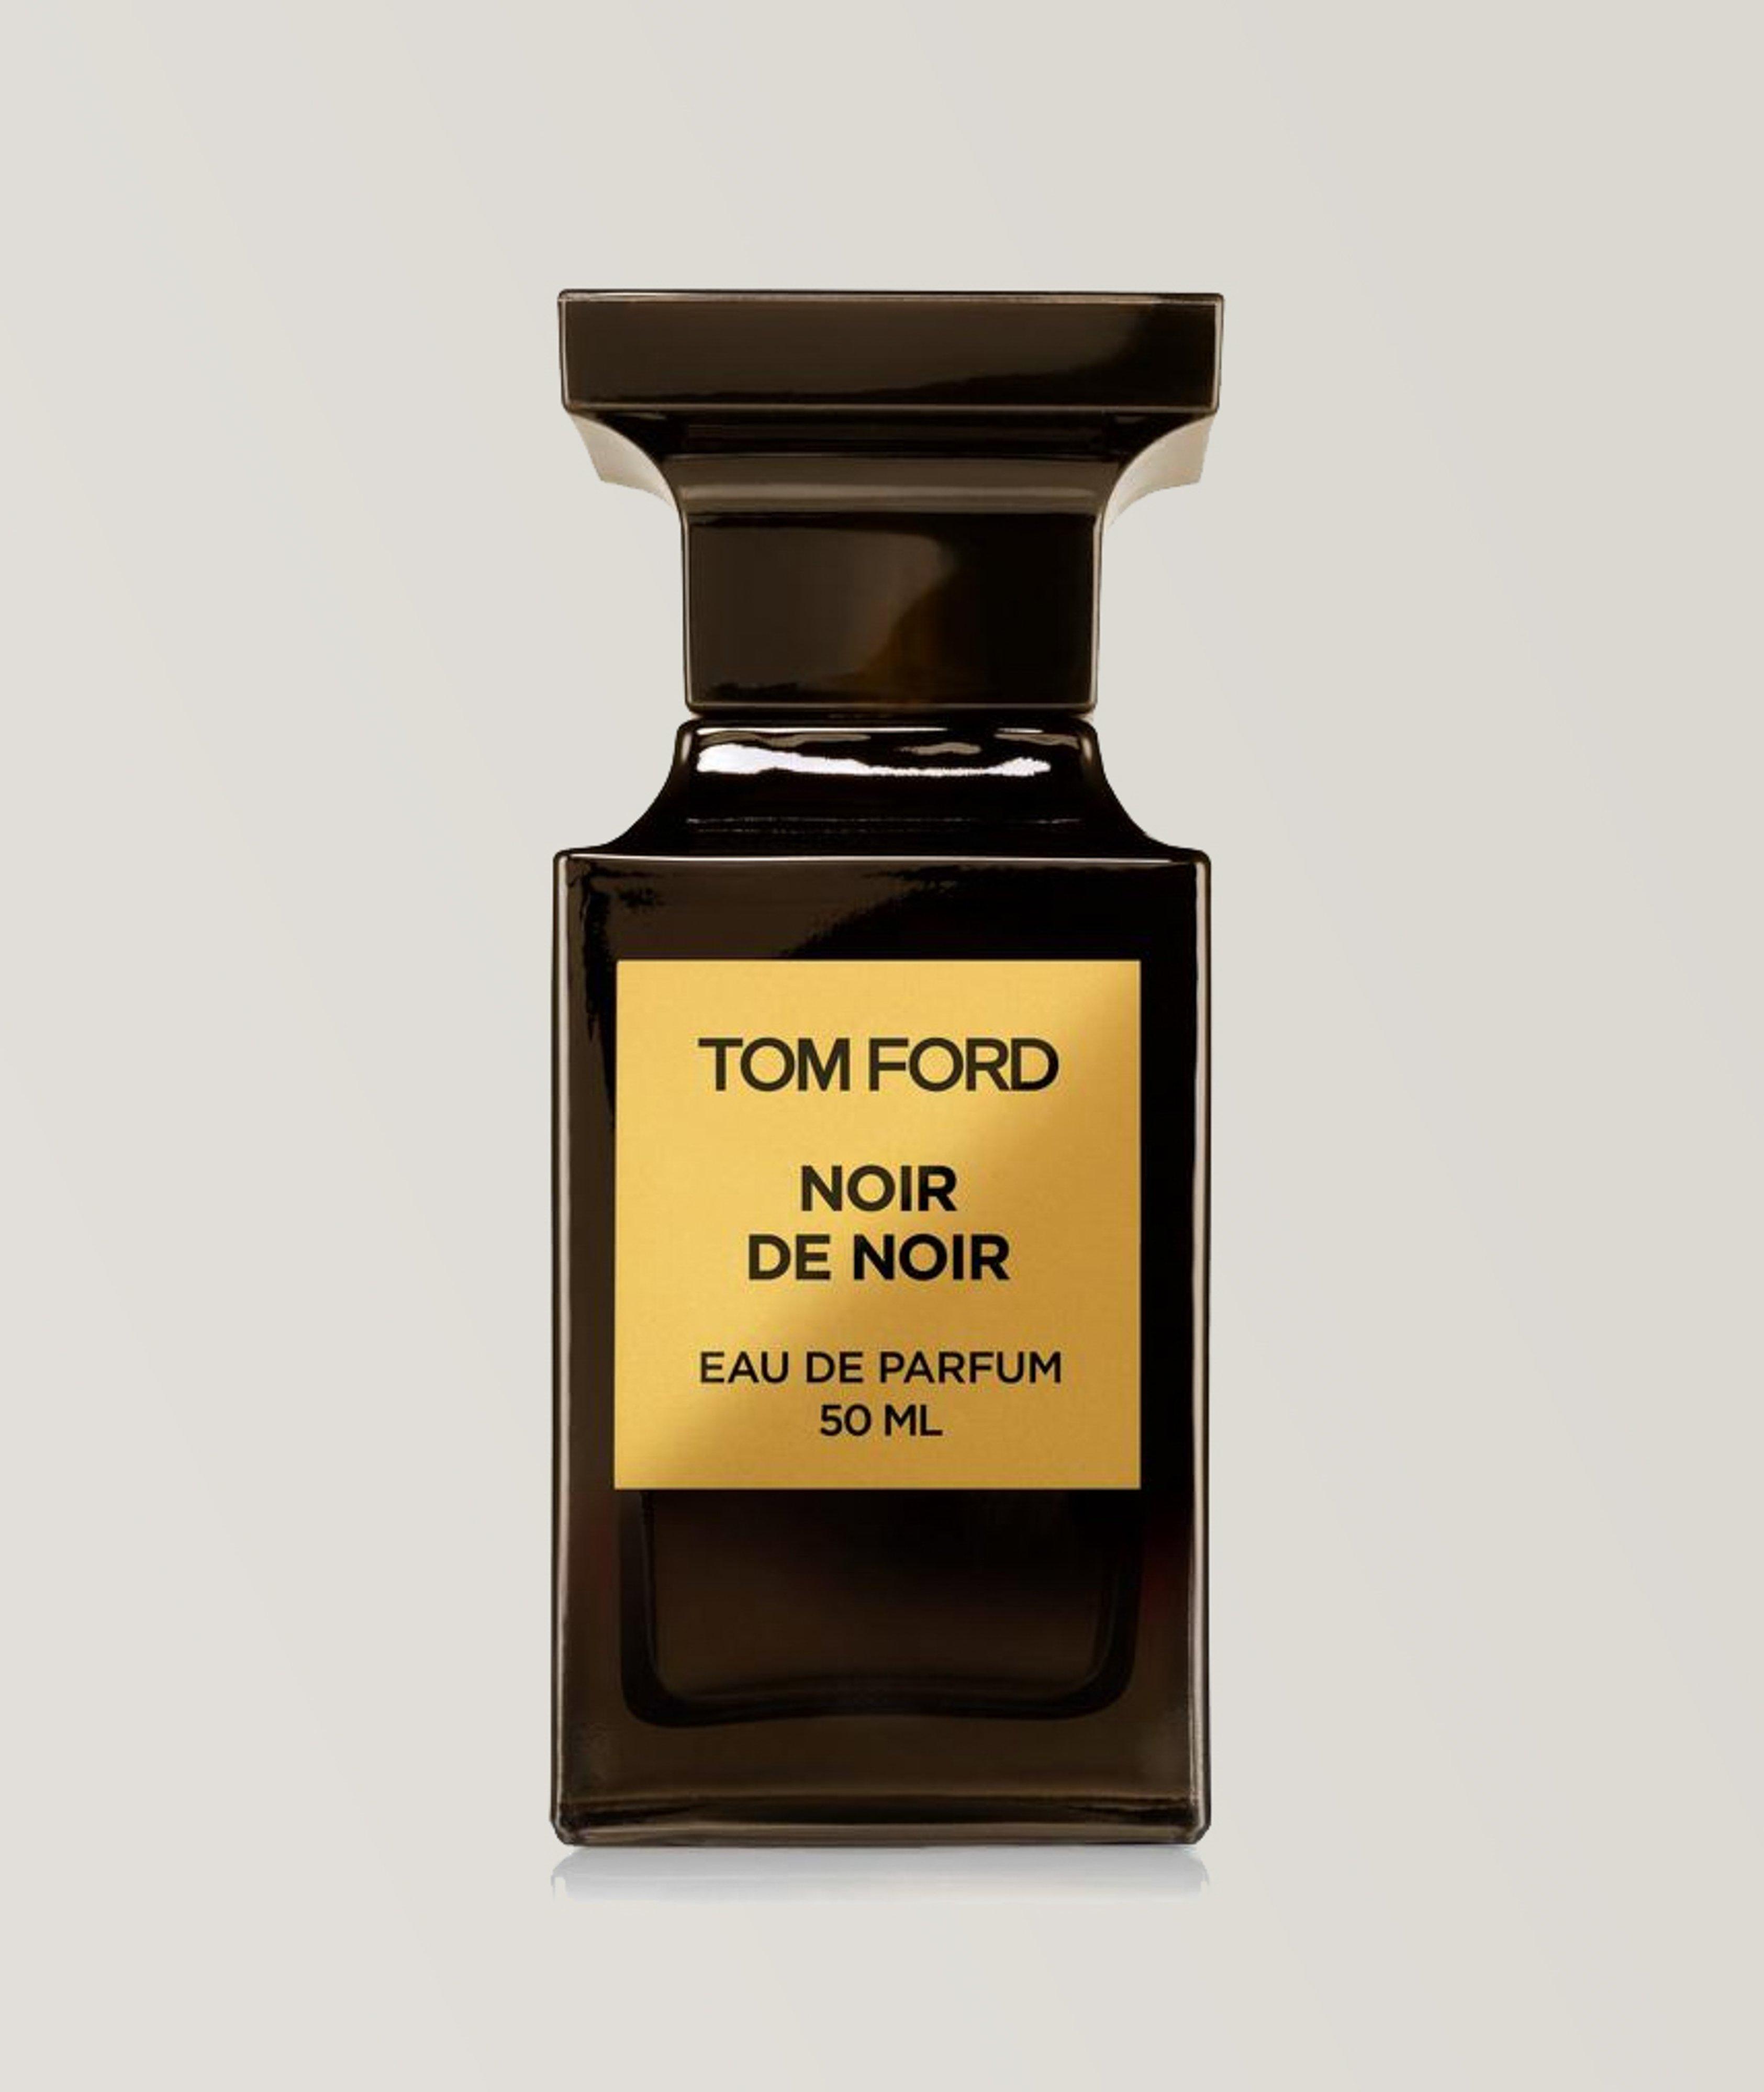 TOM FORD Noir de Noir Eau De Parfum 50ml